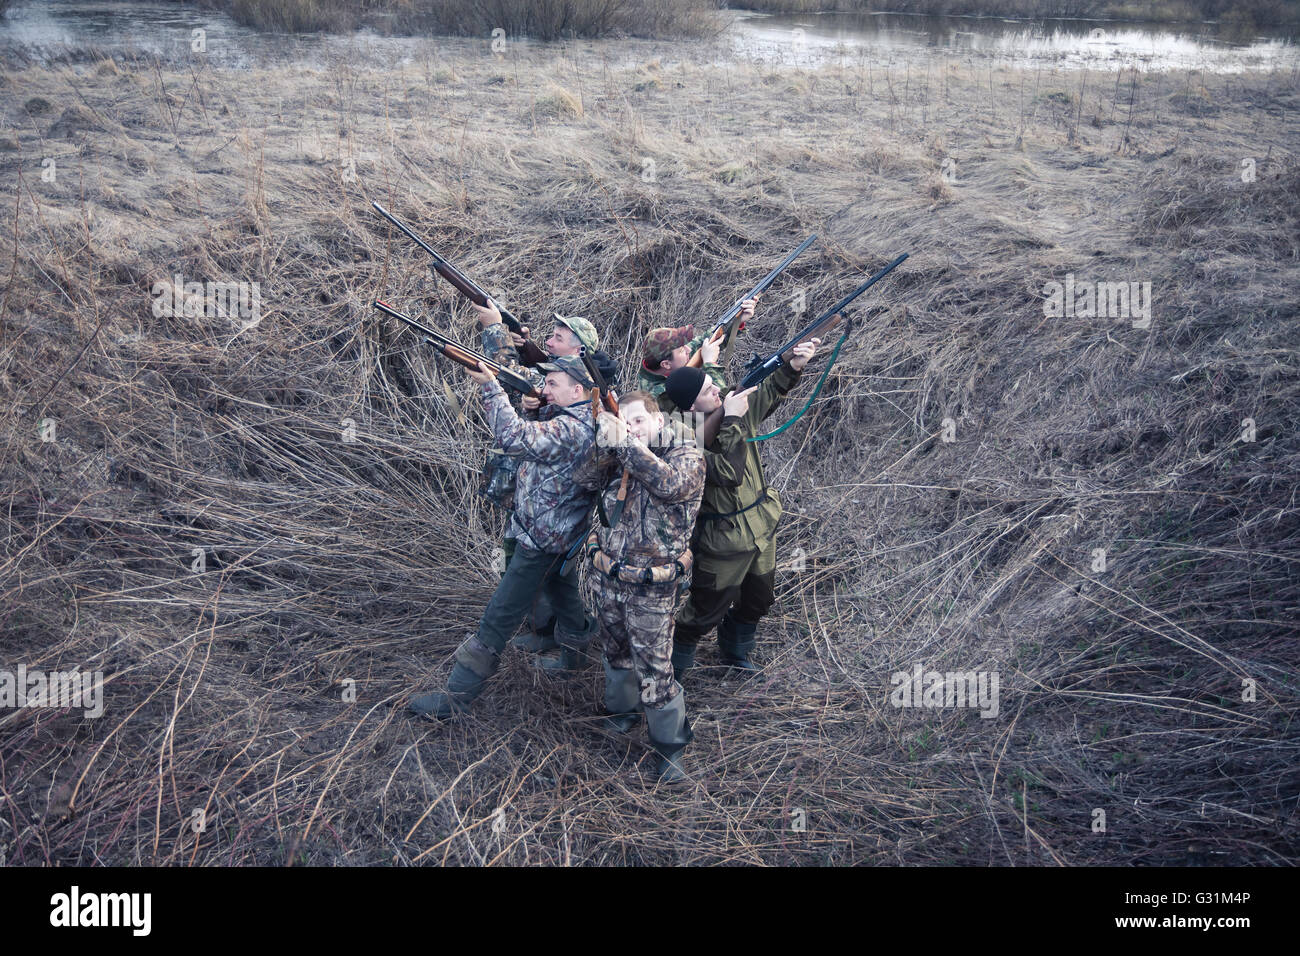 Groupe de chasseurs standing back to back in rural field et de visée et prêt à faire une photo. Concept pour le travail d'équipe Banque D'Images